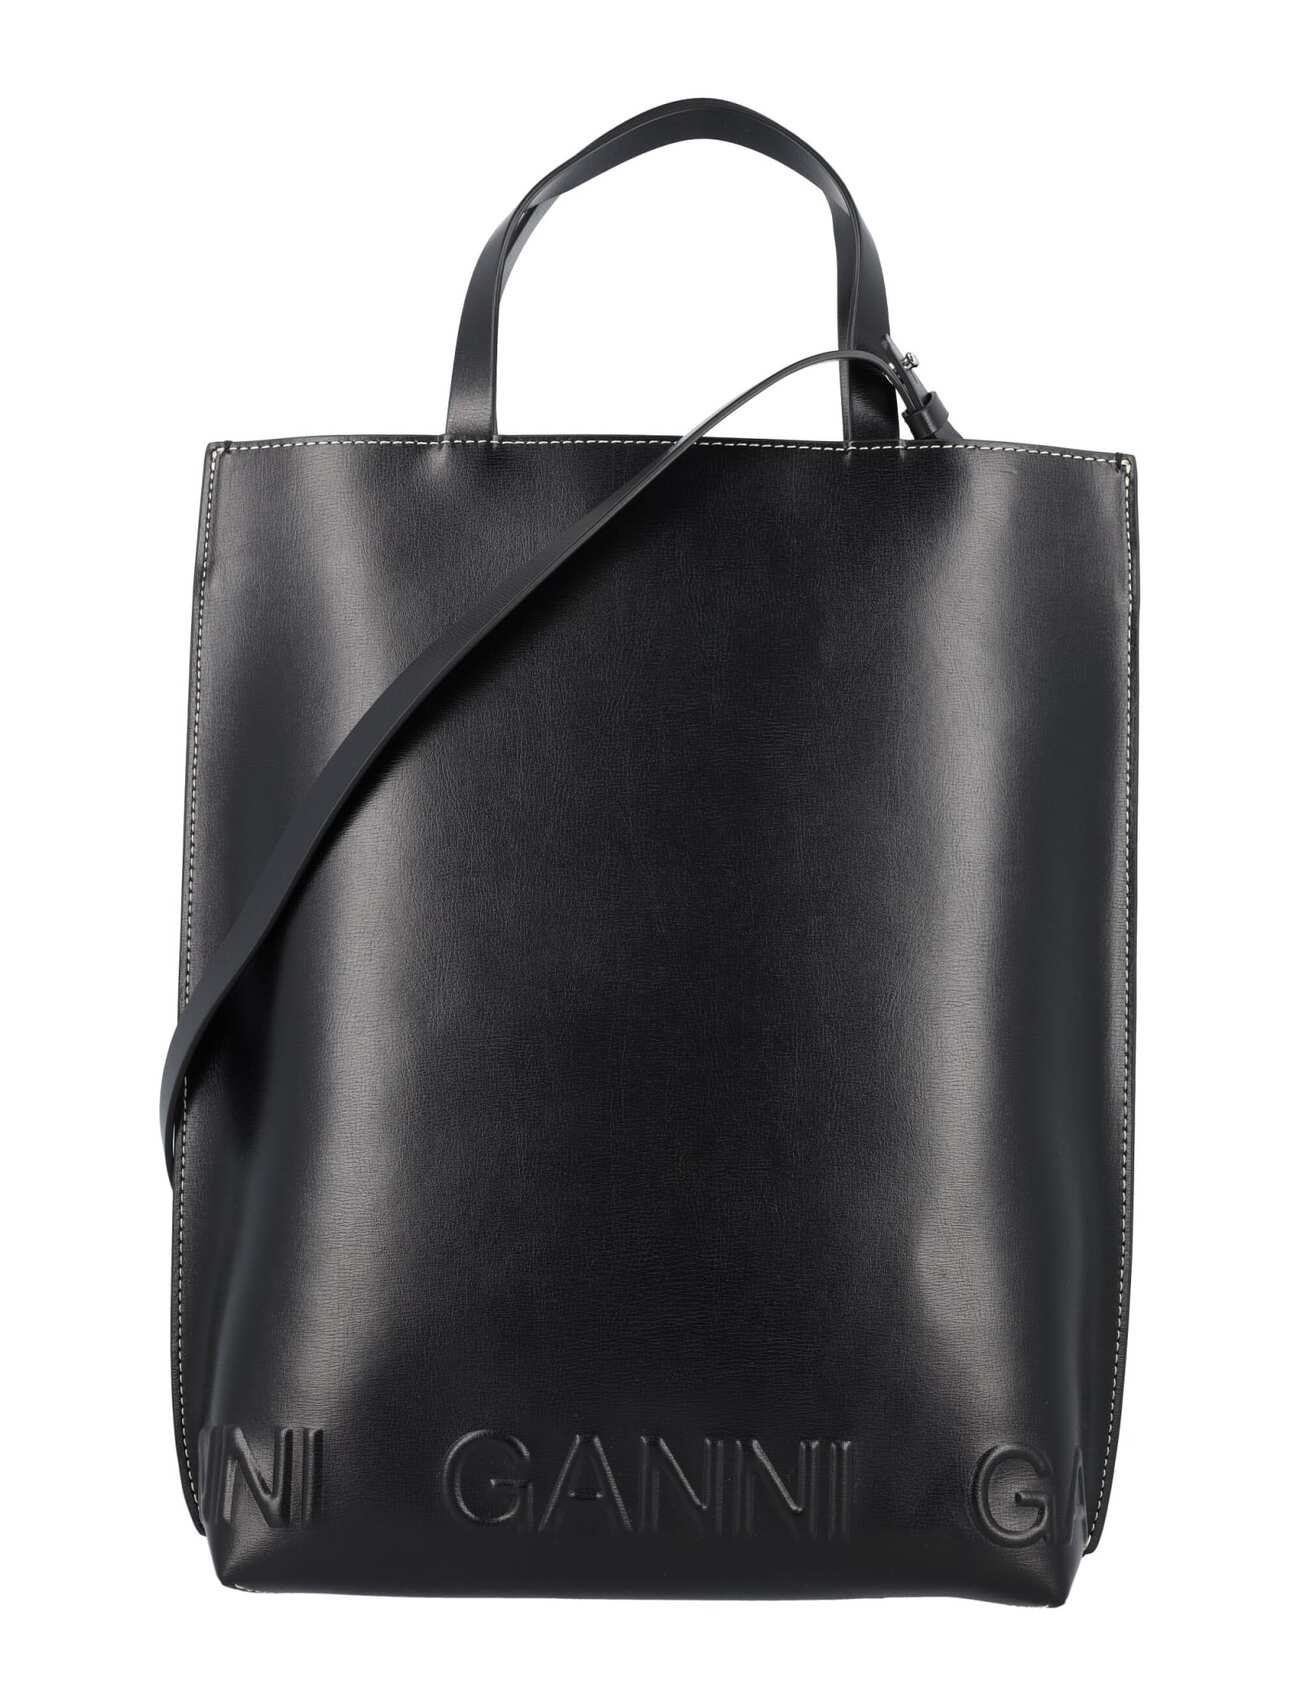 Ganni Medium Tote Bag in black